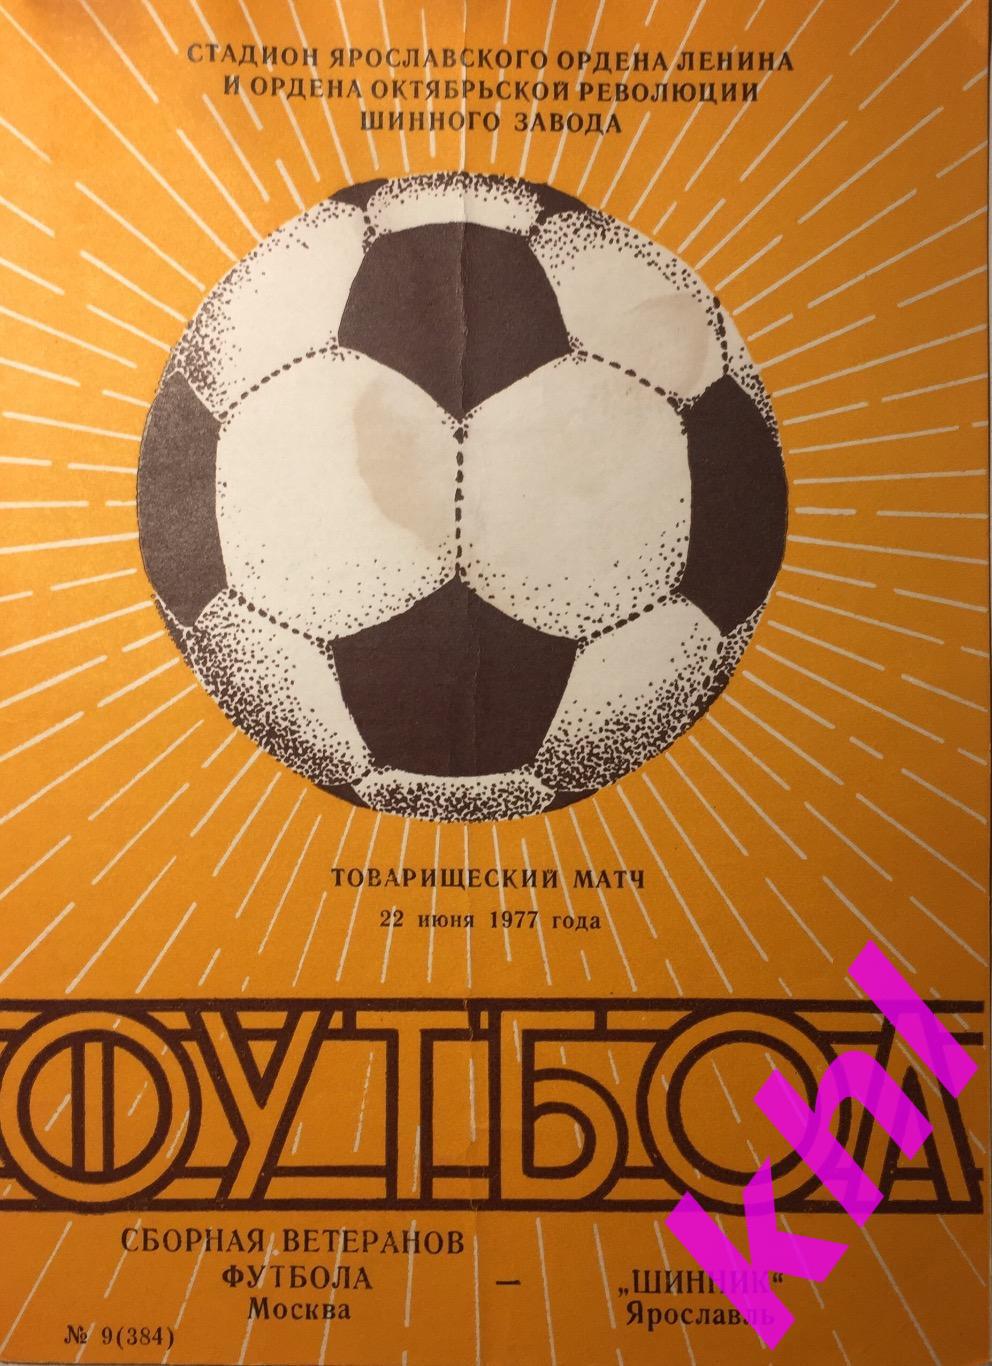 Шинник Ярославль - сборная ветеранов футбола Москва 22 июня 1977